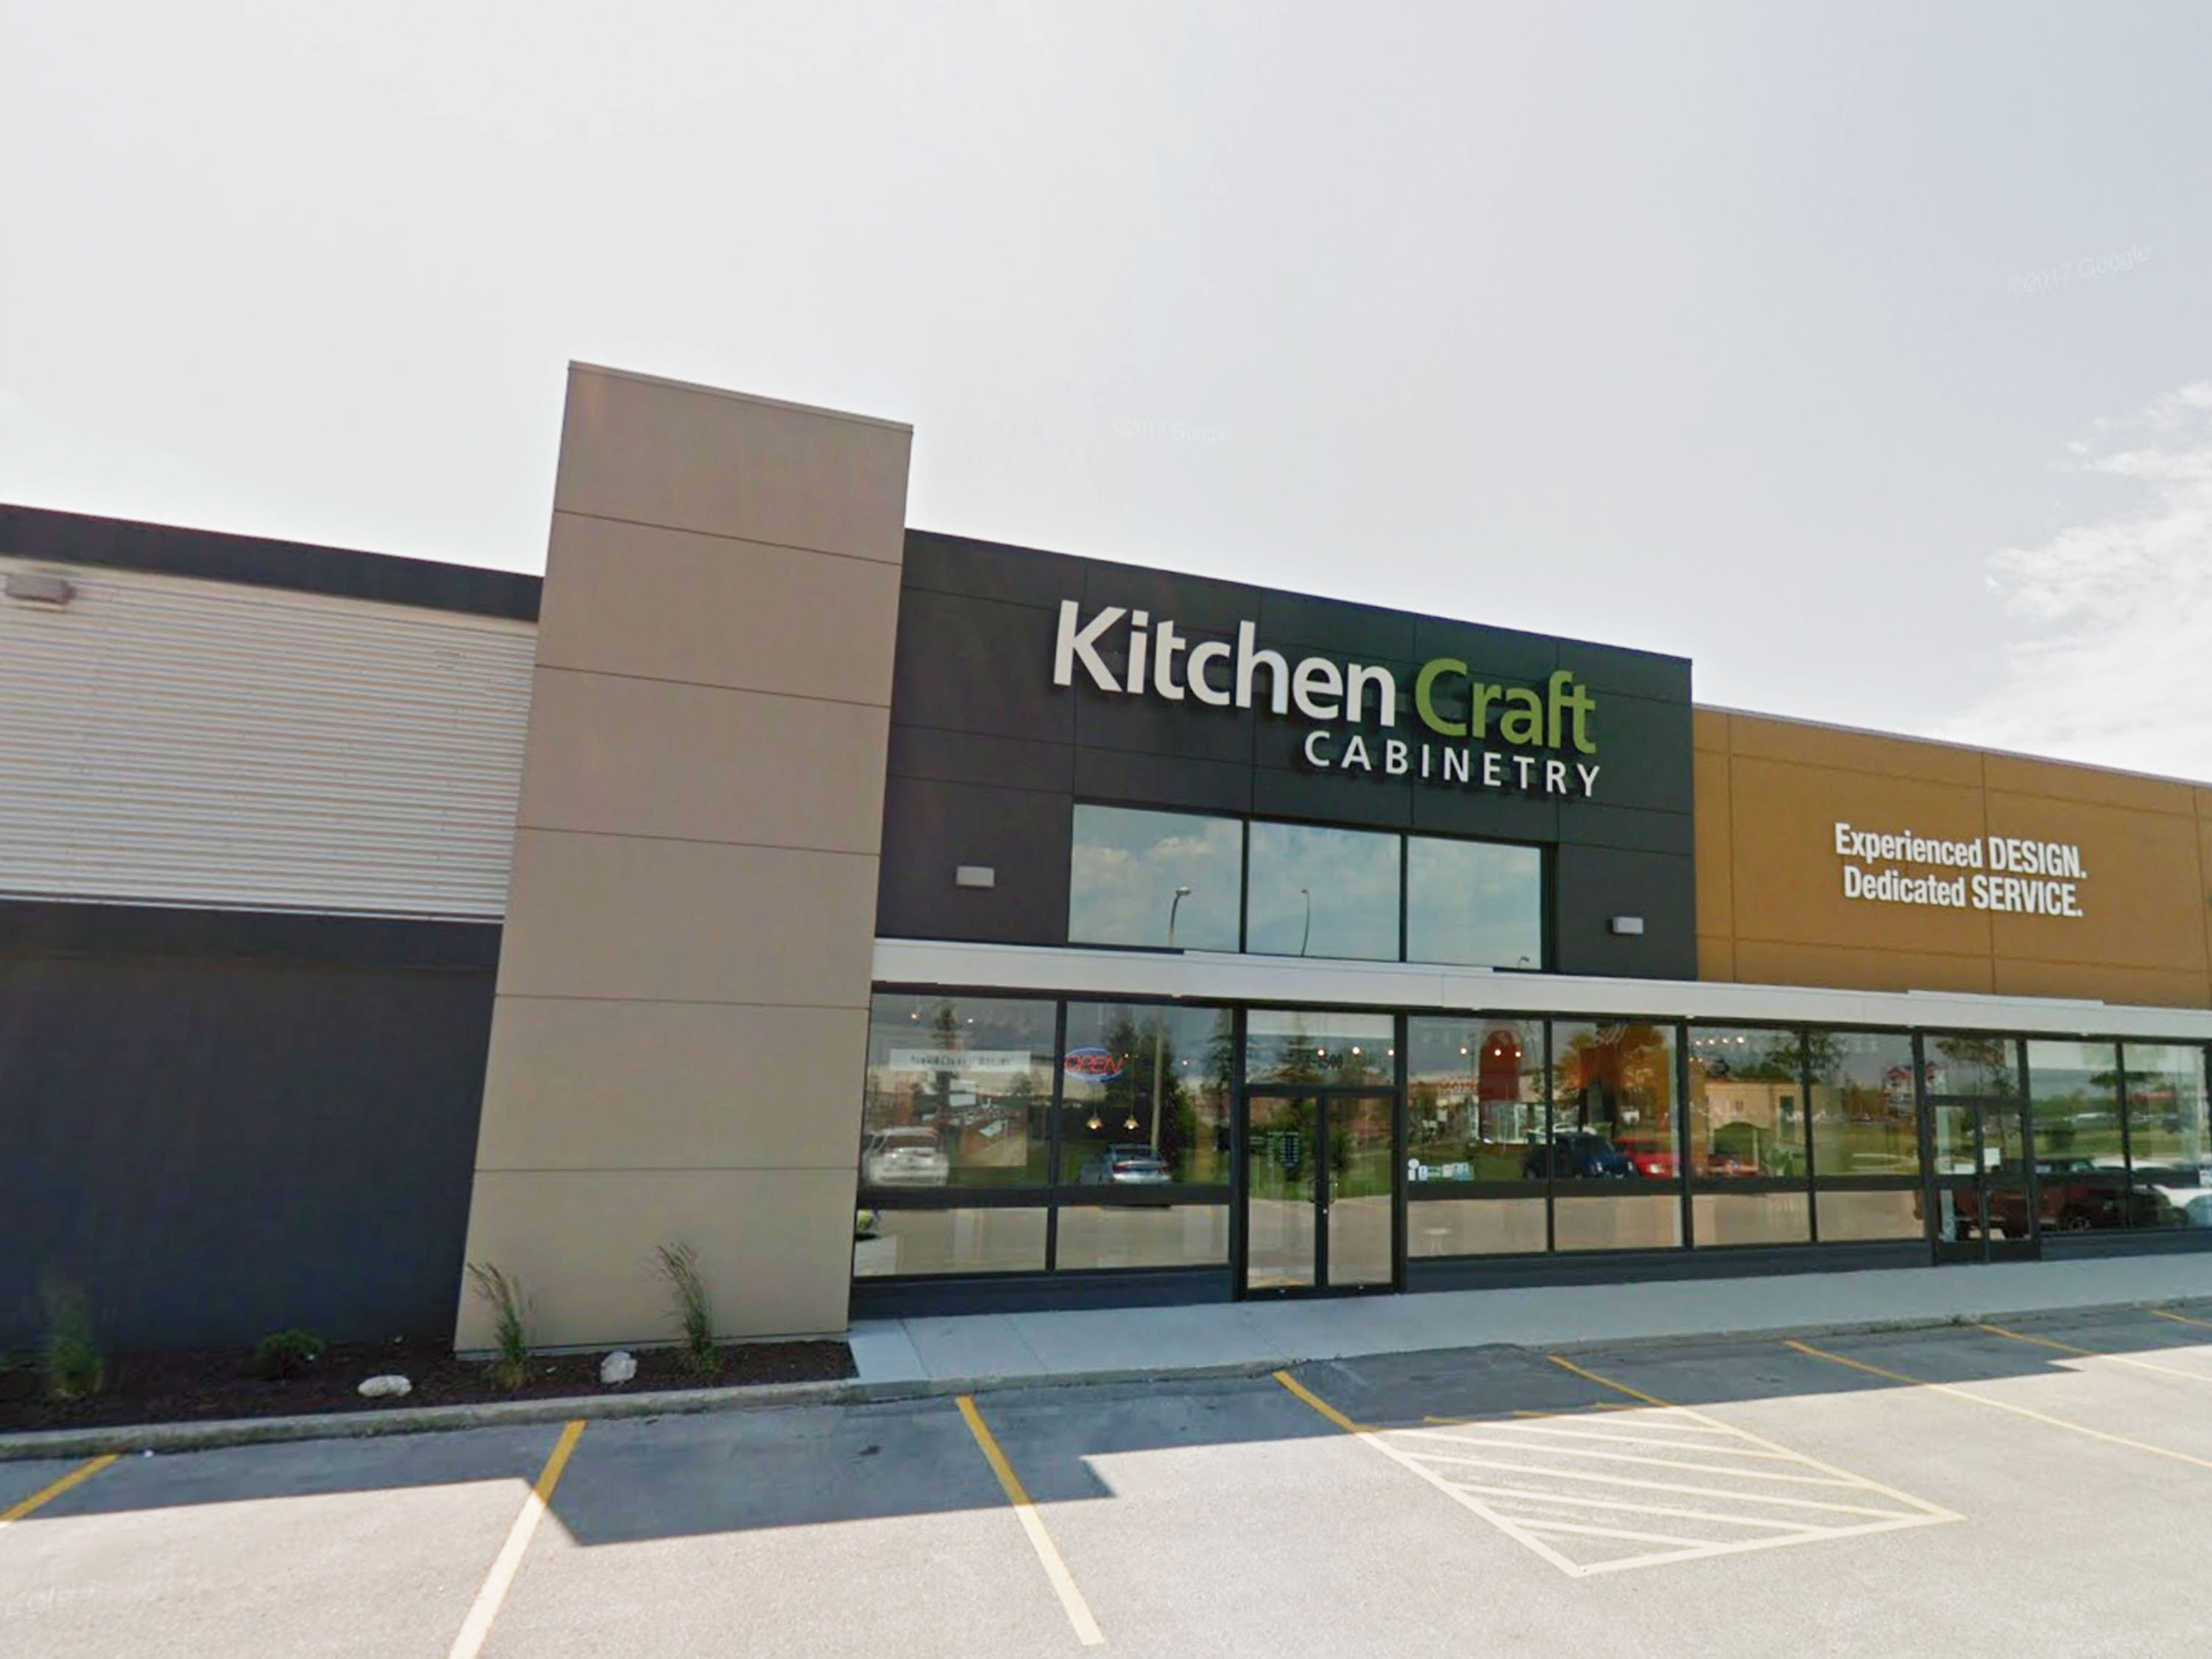 Edmonton Kitchen Cabinets Kitchen Craft Retail Stores